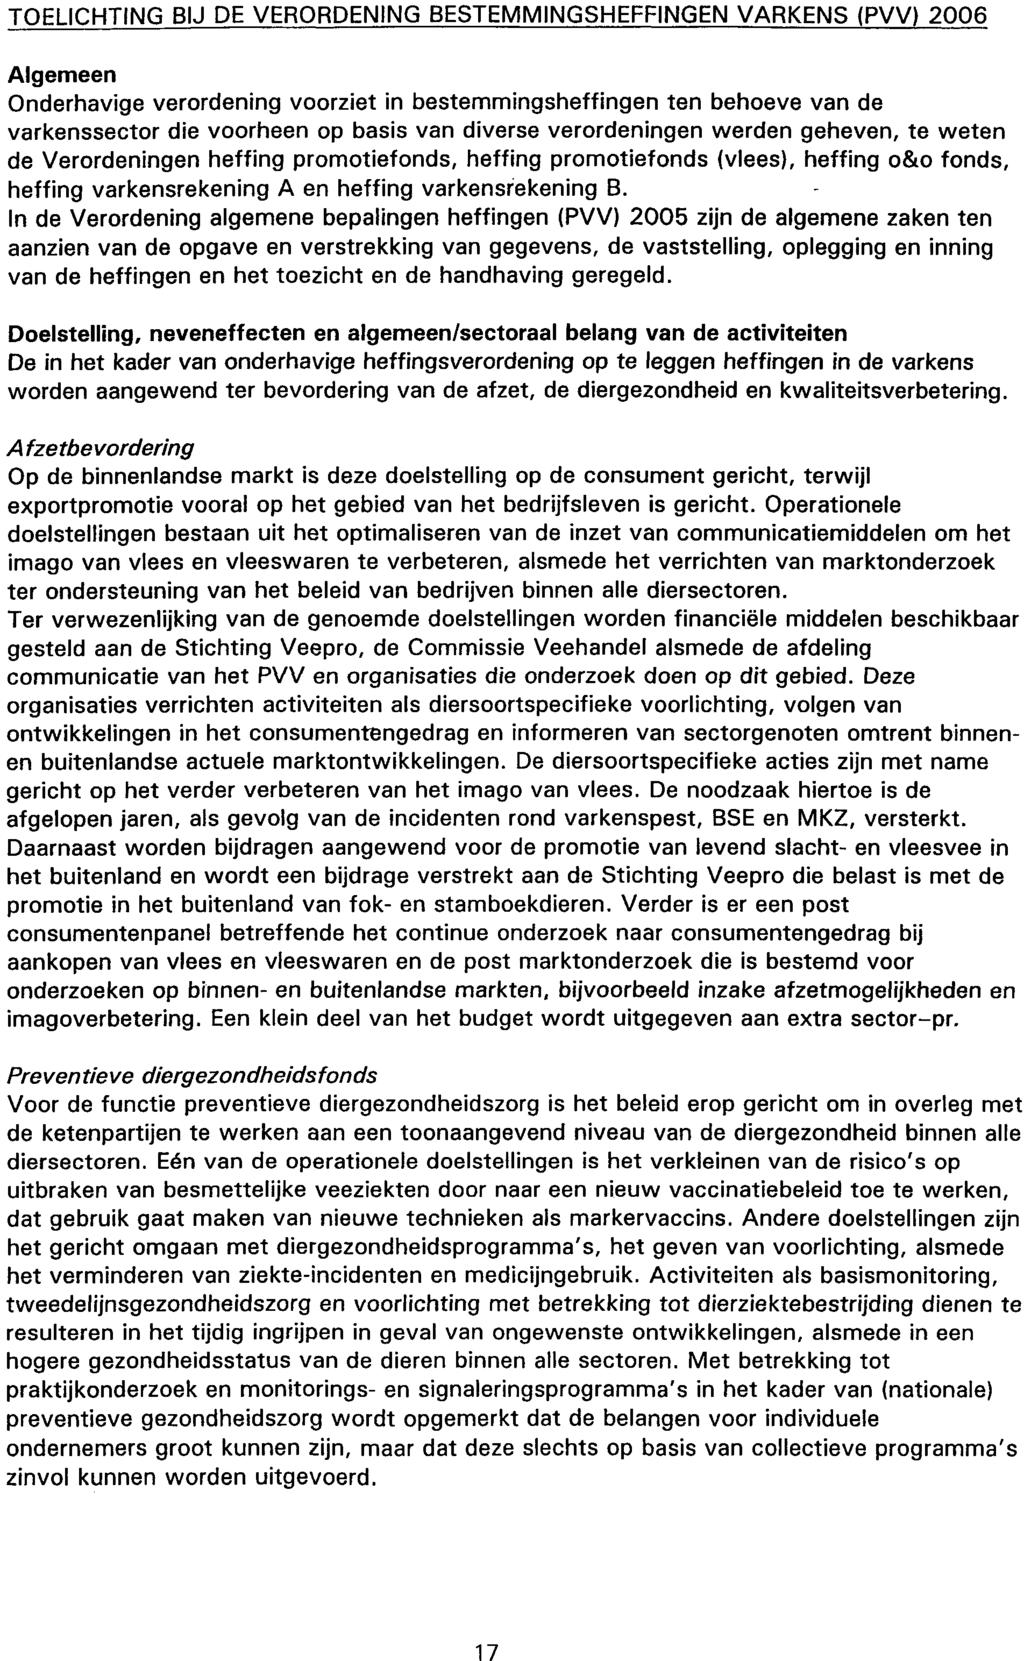 TOELICHTING BIJ DE VERORDENING BESTEMMINGSHEFFINGEN VARKENS (PVV) 2006 Algemeen Onderhavige verordening voorziet in bestemmingsheffingen ten behoeve van de varkenssector die voorheen op basis van